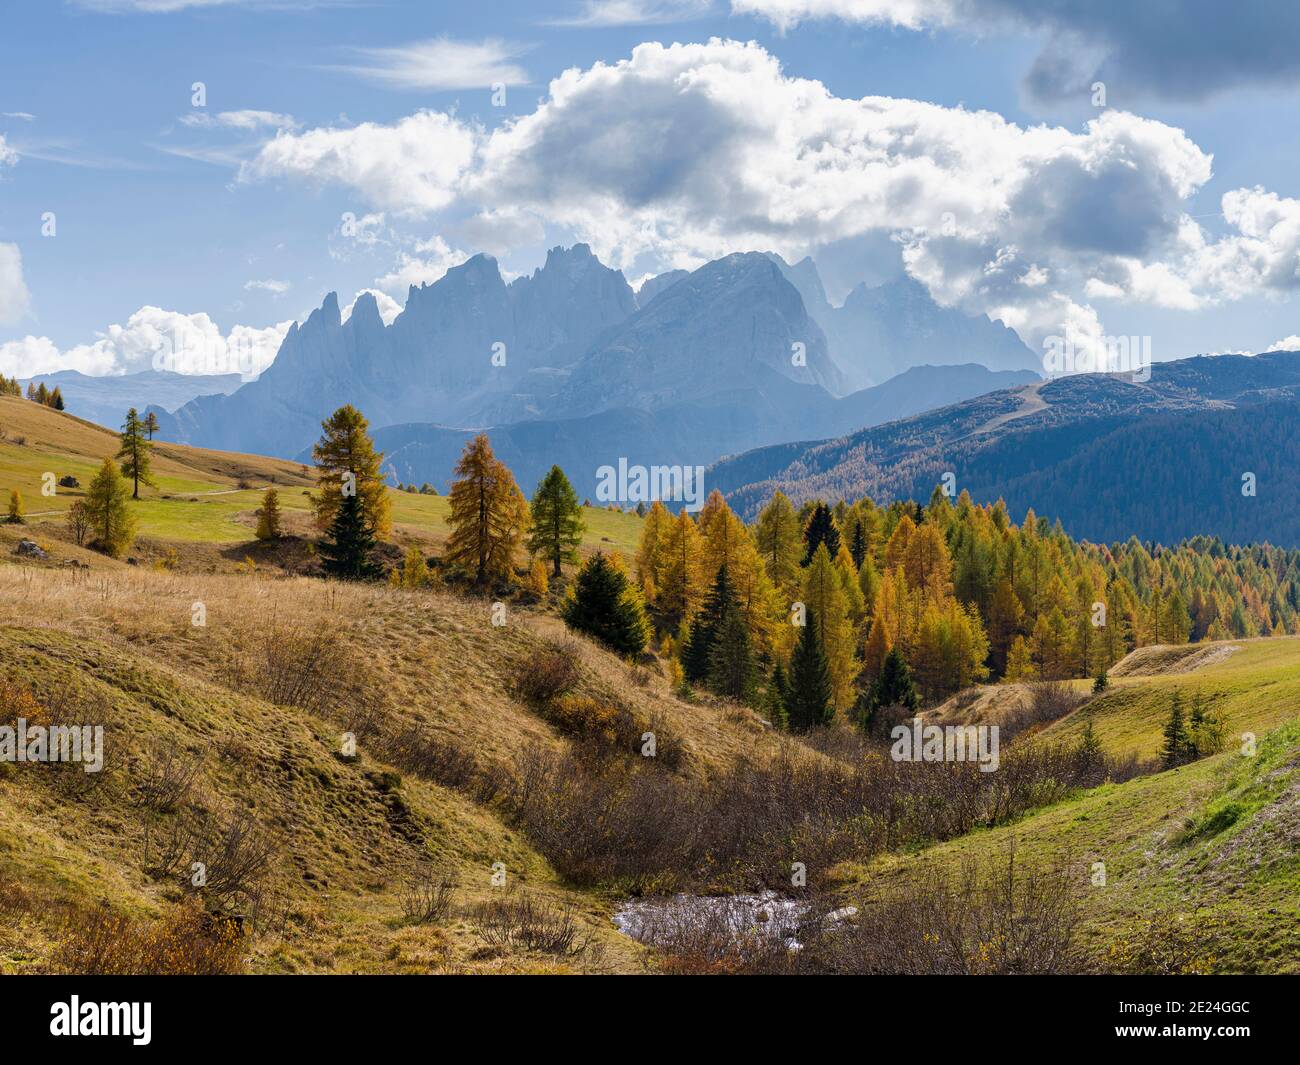 Vista verso pale di San Martino, catena montuosa del Focobon, nelle Dolomiti del Trentino, vista dall'alpe Fuciade nella fascia meridionale della Marmolada. Europass Foto Stock